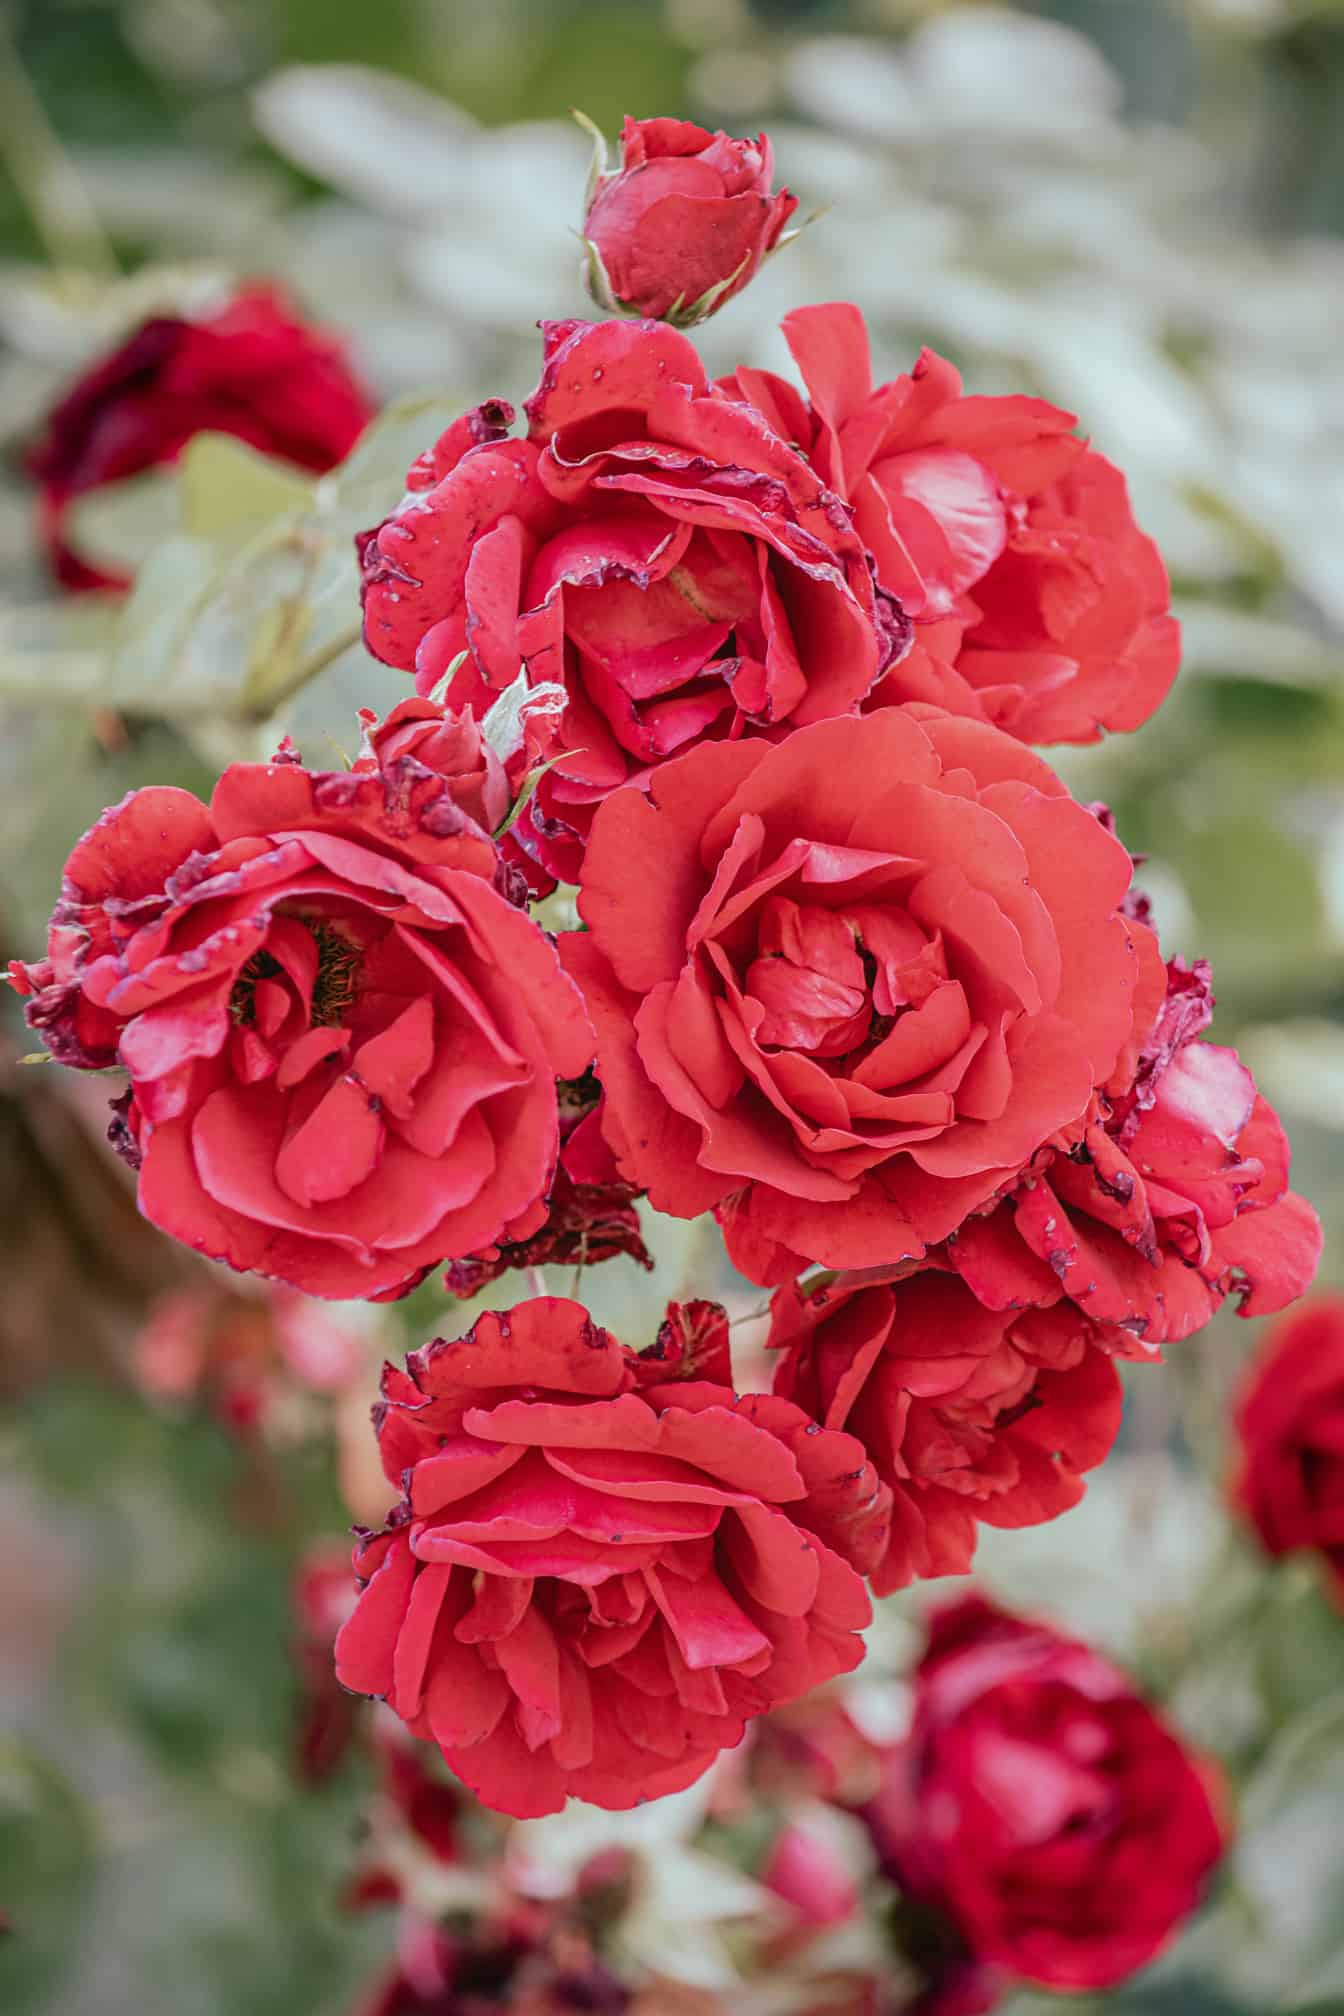 Pastelkleurige roodachtige roze bloemen bloeien in de close-up van de bloementuin